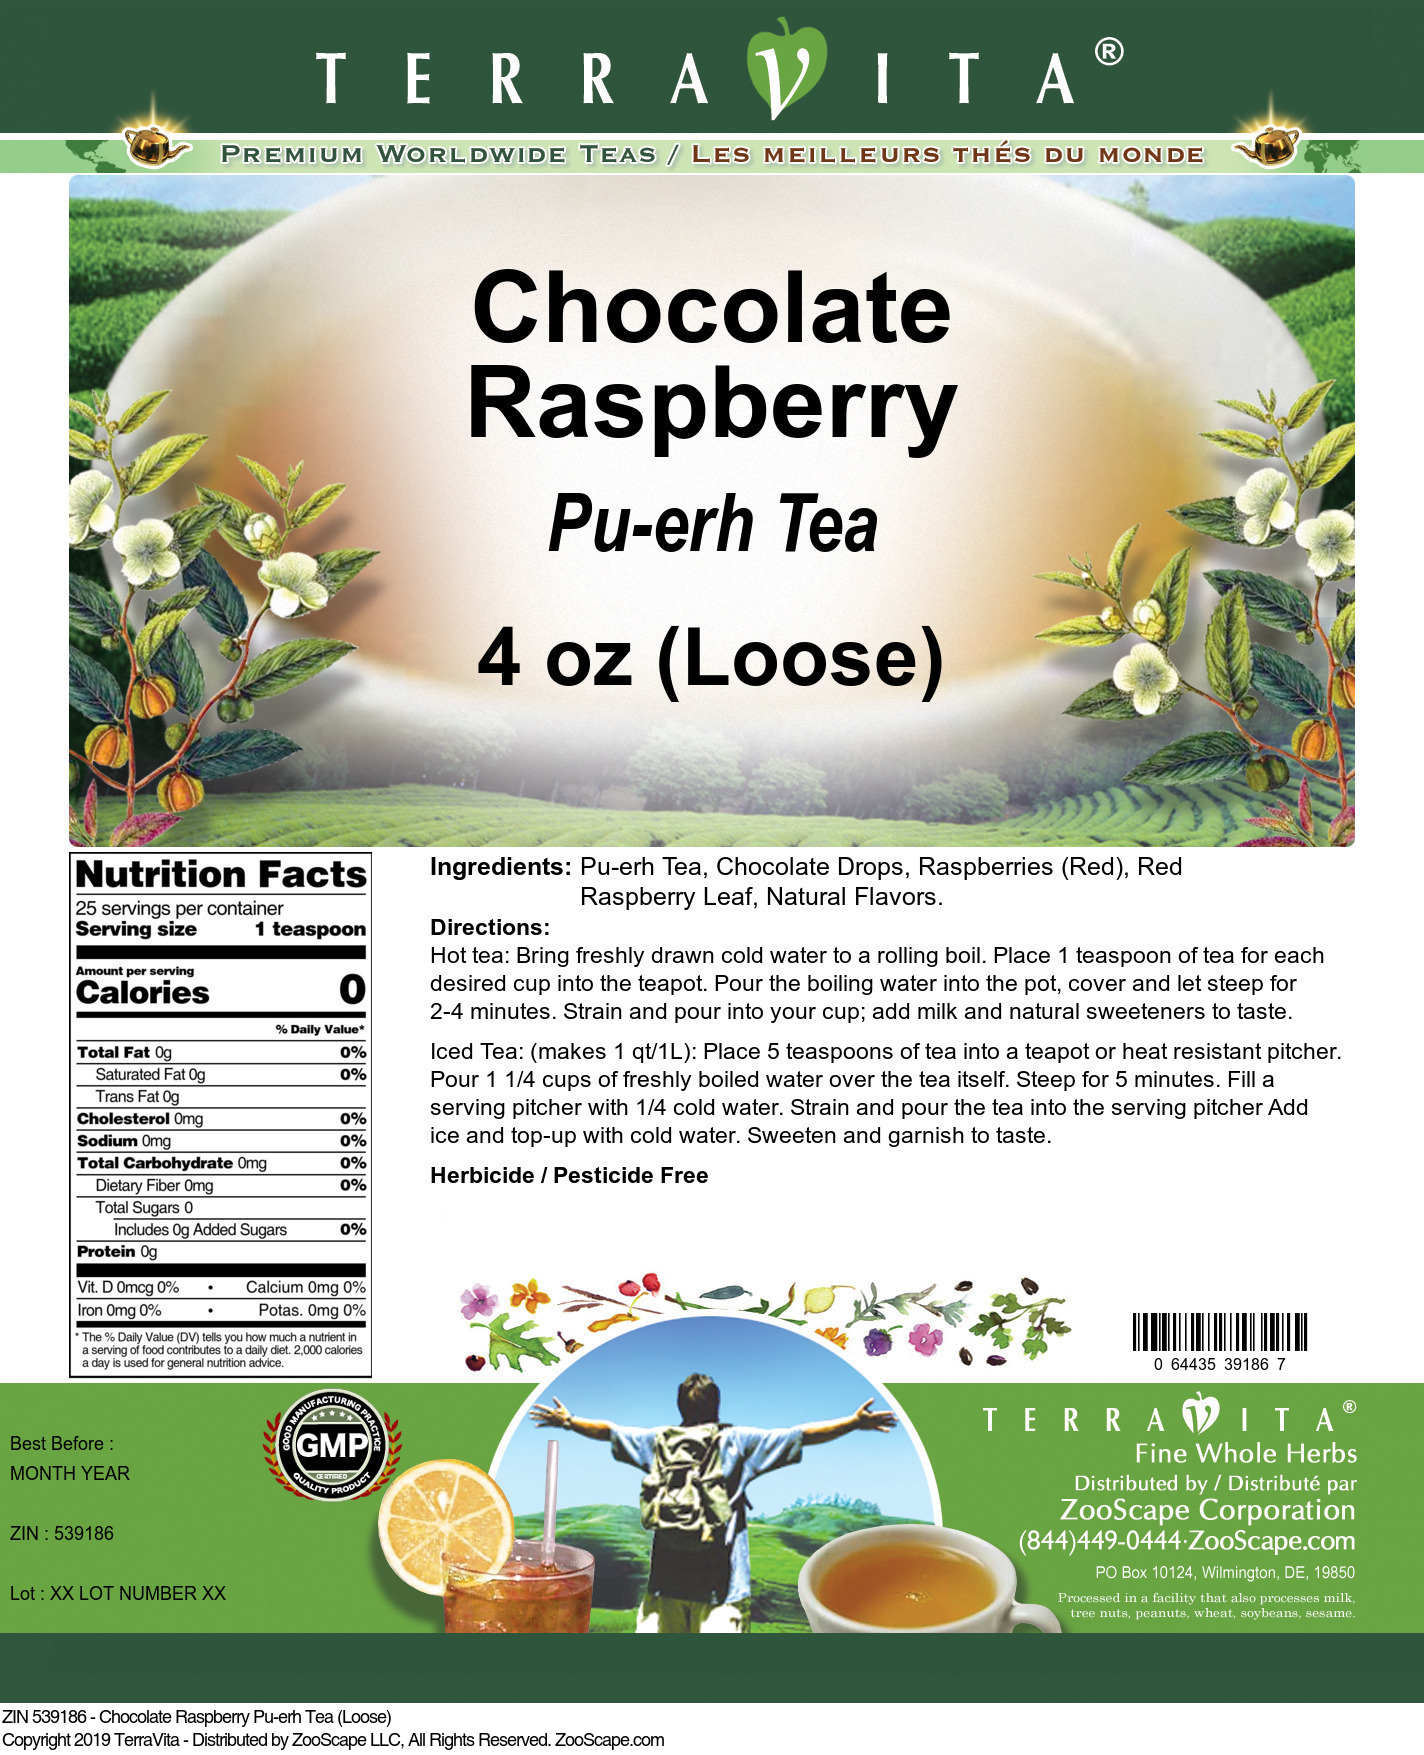 Chocolate Raspberry Pu-erh Tea (Loose) - Label